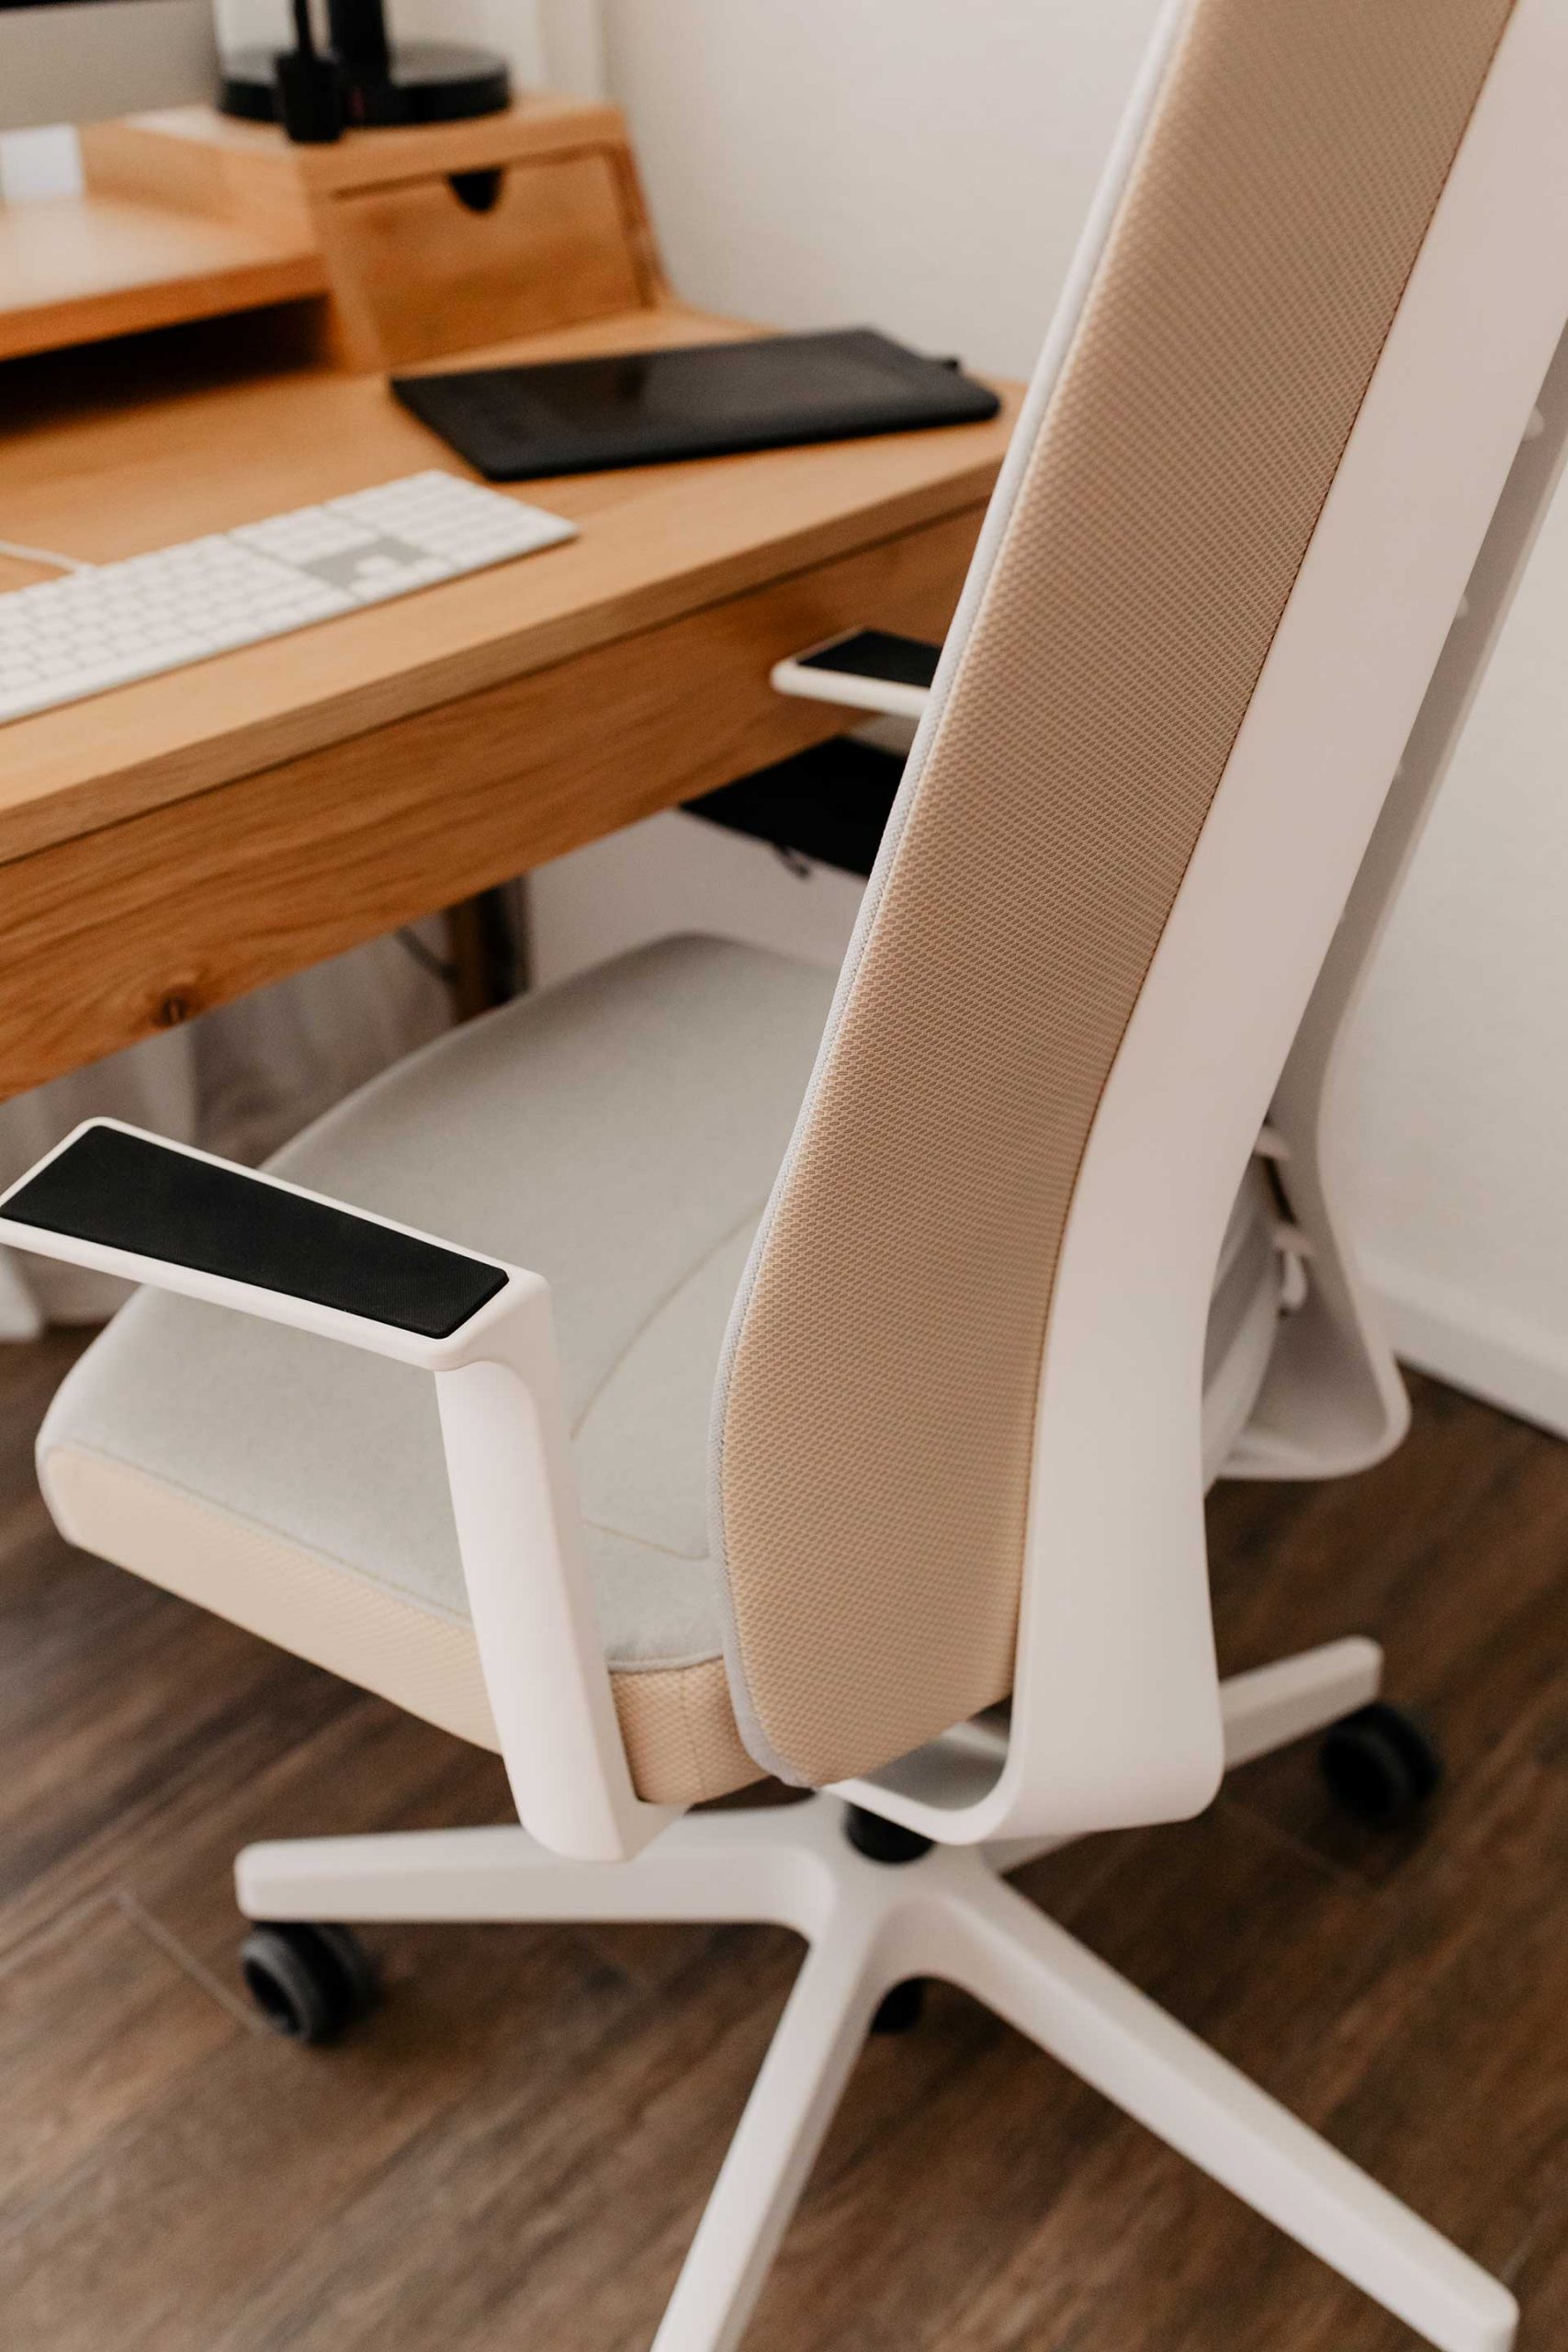 Produktplatzierung. Hast du dir schon mal konkrete Gedanken über deinen Bürostuhl gemacht und überlegt, was ergonomisch Sitzen bedeutet? Am Karriereblog gebe ich dir nützliche Tipps. www.whoismocca.com